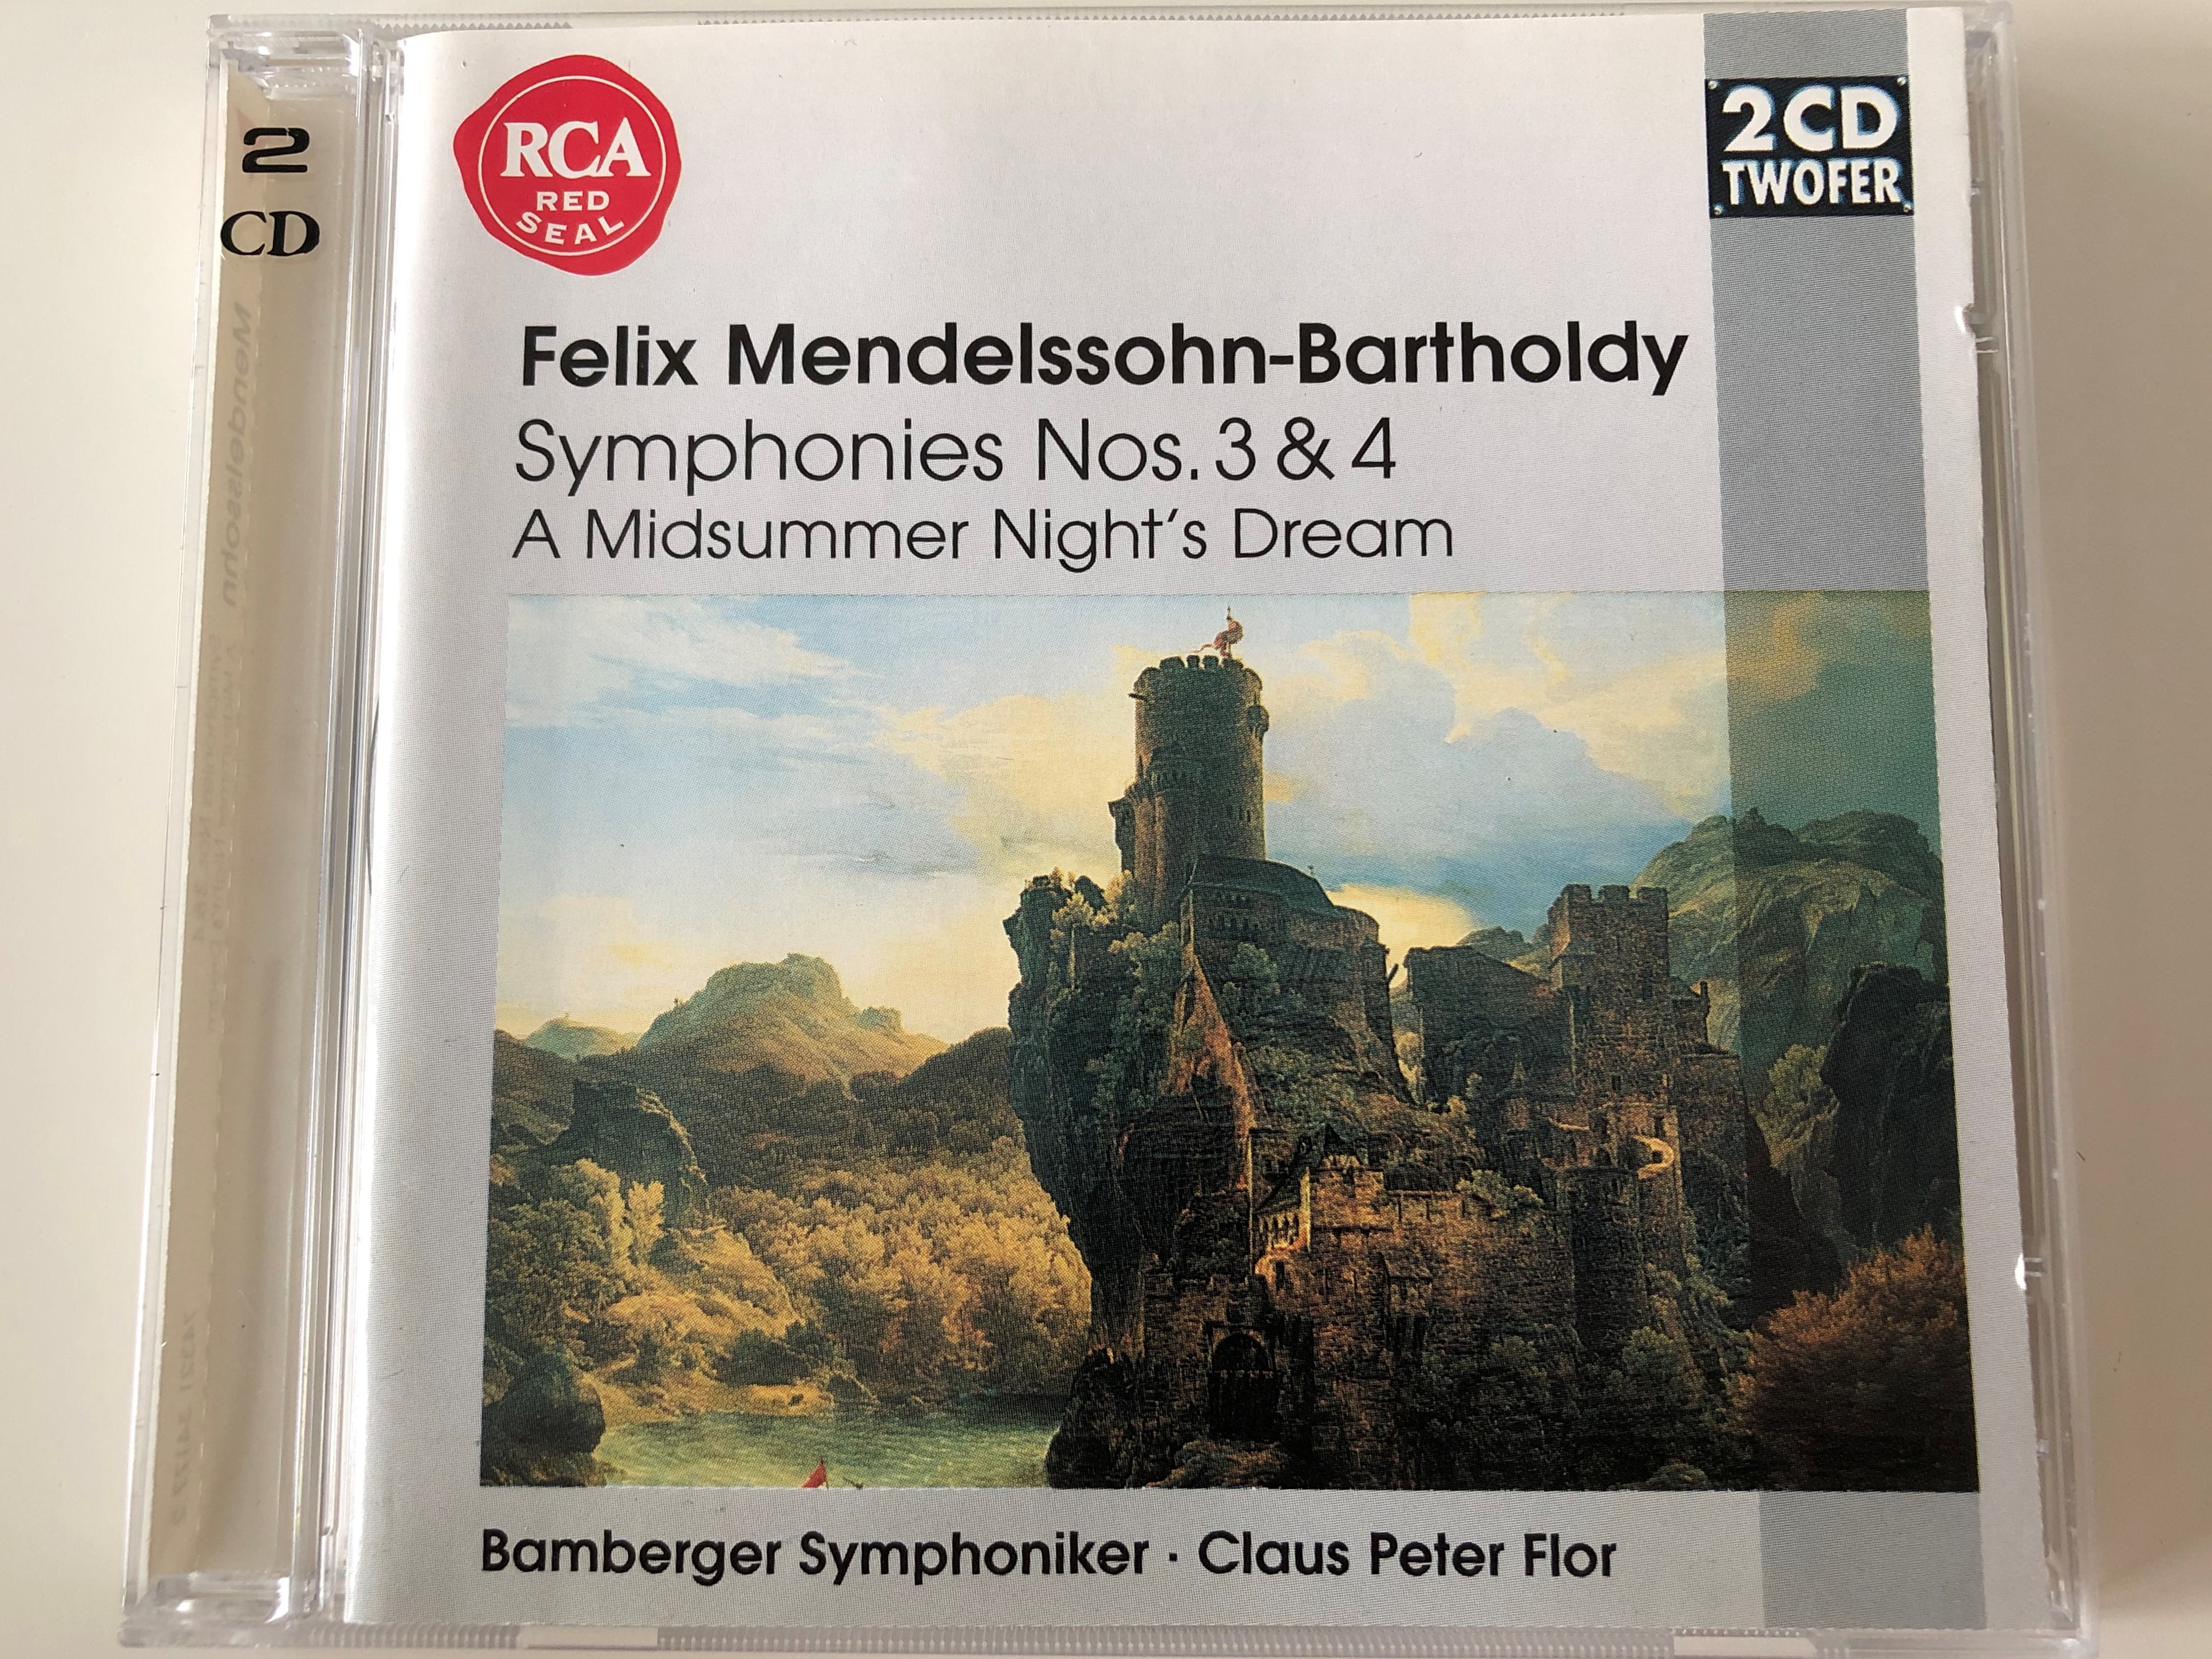 felix-mendelssohn-bartholdy-symphonies-nos.-3-4-a-midsummer-night-s-dream-bamberger-symphoniker-claus-peter-flor-bmg-music-2x-audio-cd-1997-stereo-74321-34177-2-1-.jpg